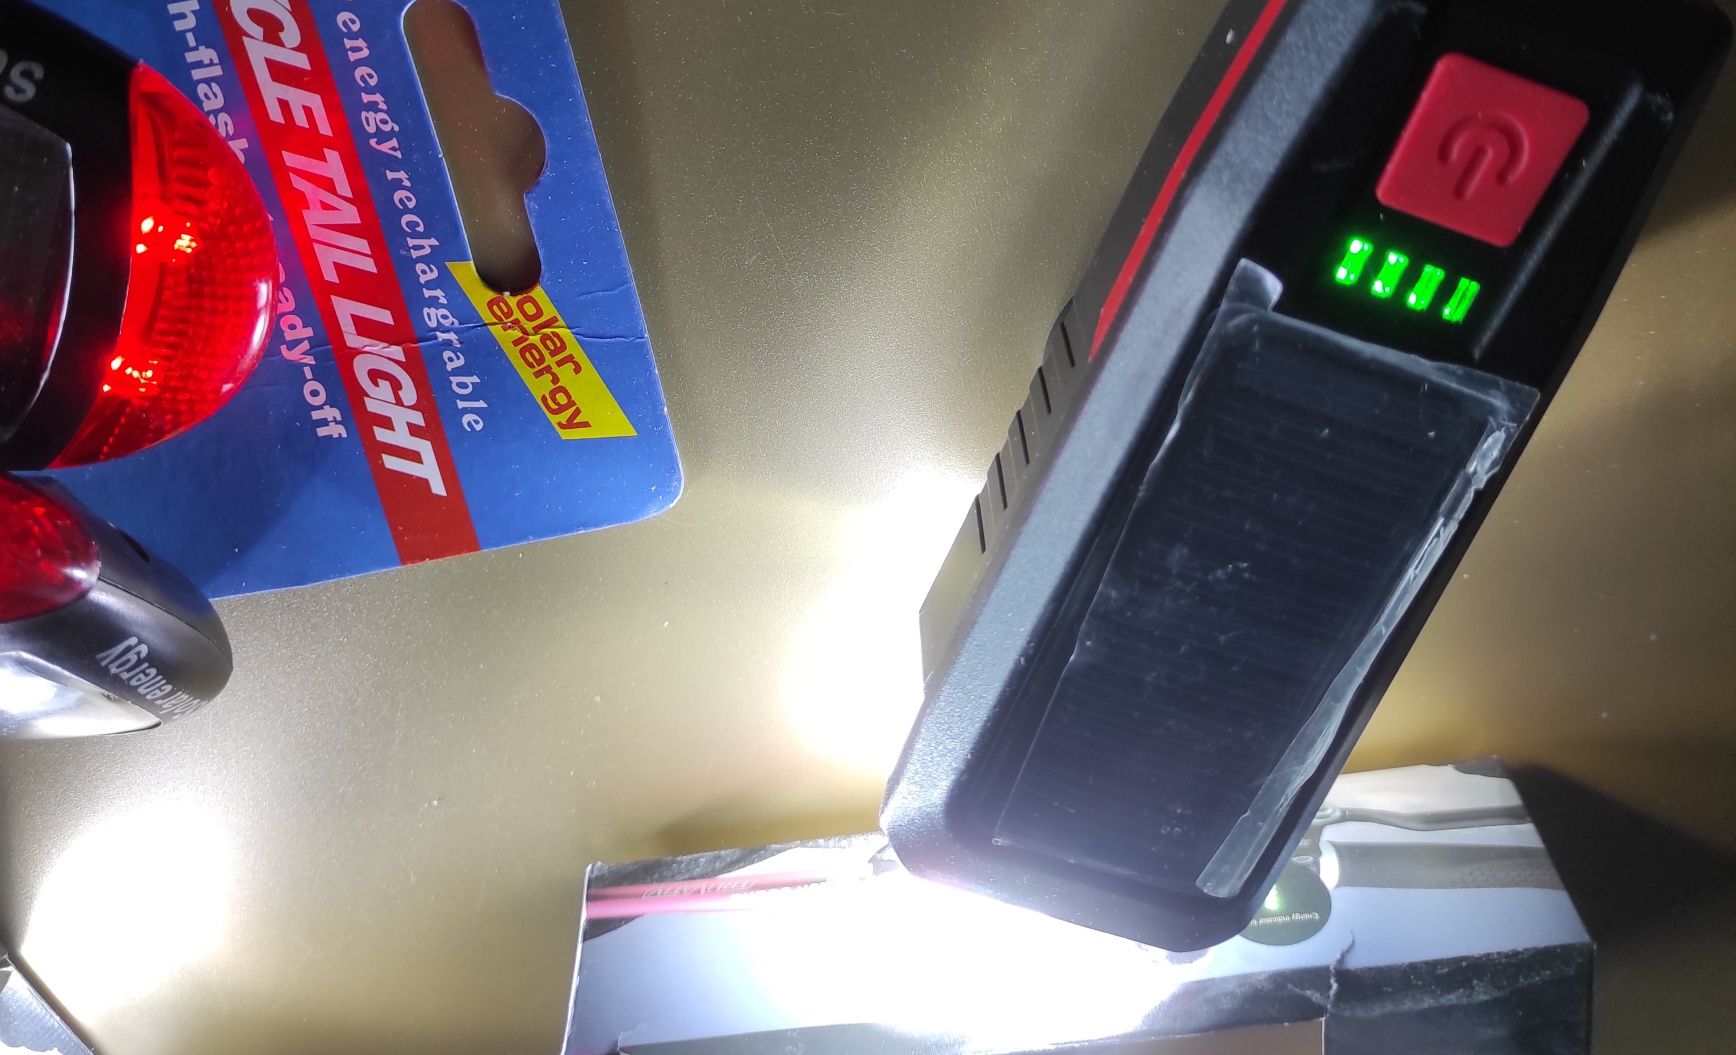 Solar dupla carga (solar + USB) luz branca da frente led + traseira